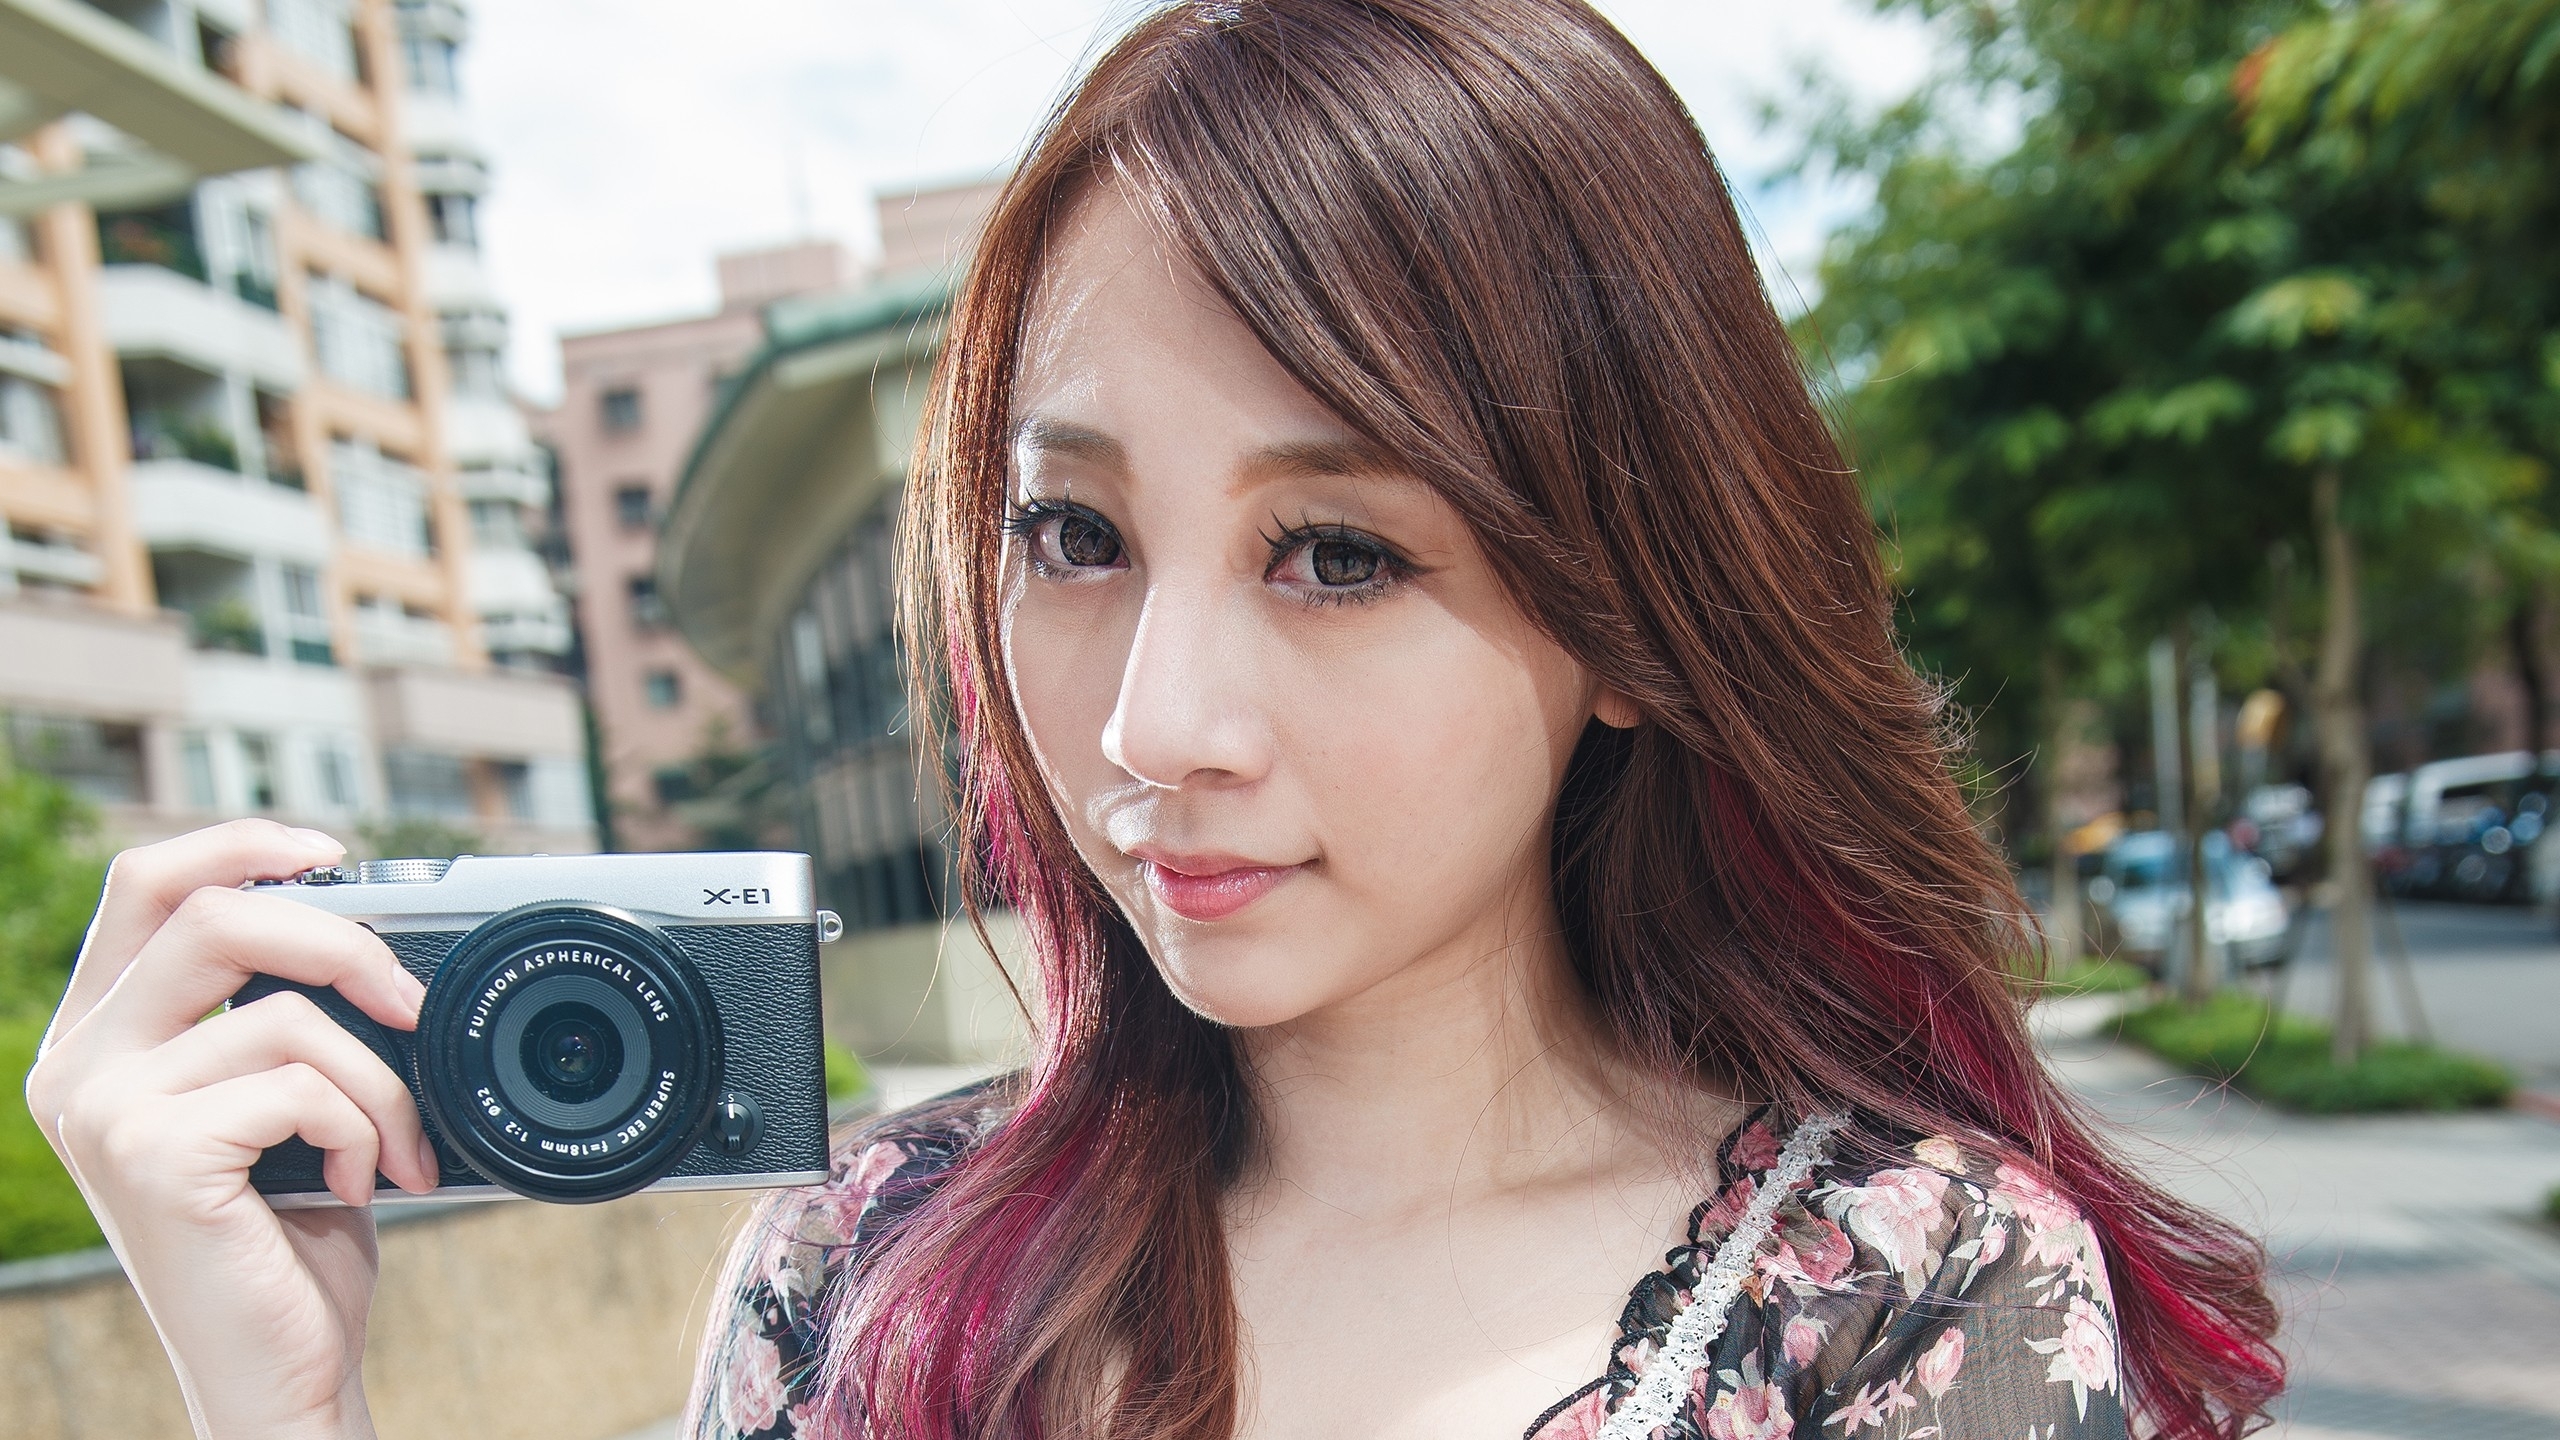 2560x1440 Resolution Asian Girl Camera 1440p Resolution Wallpaper